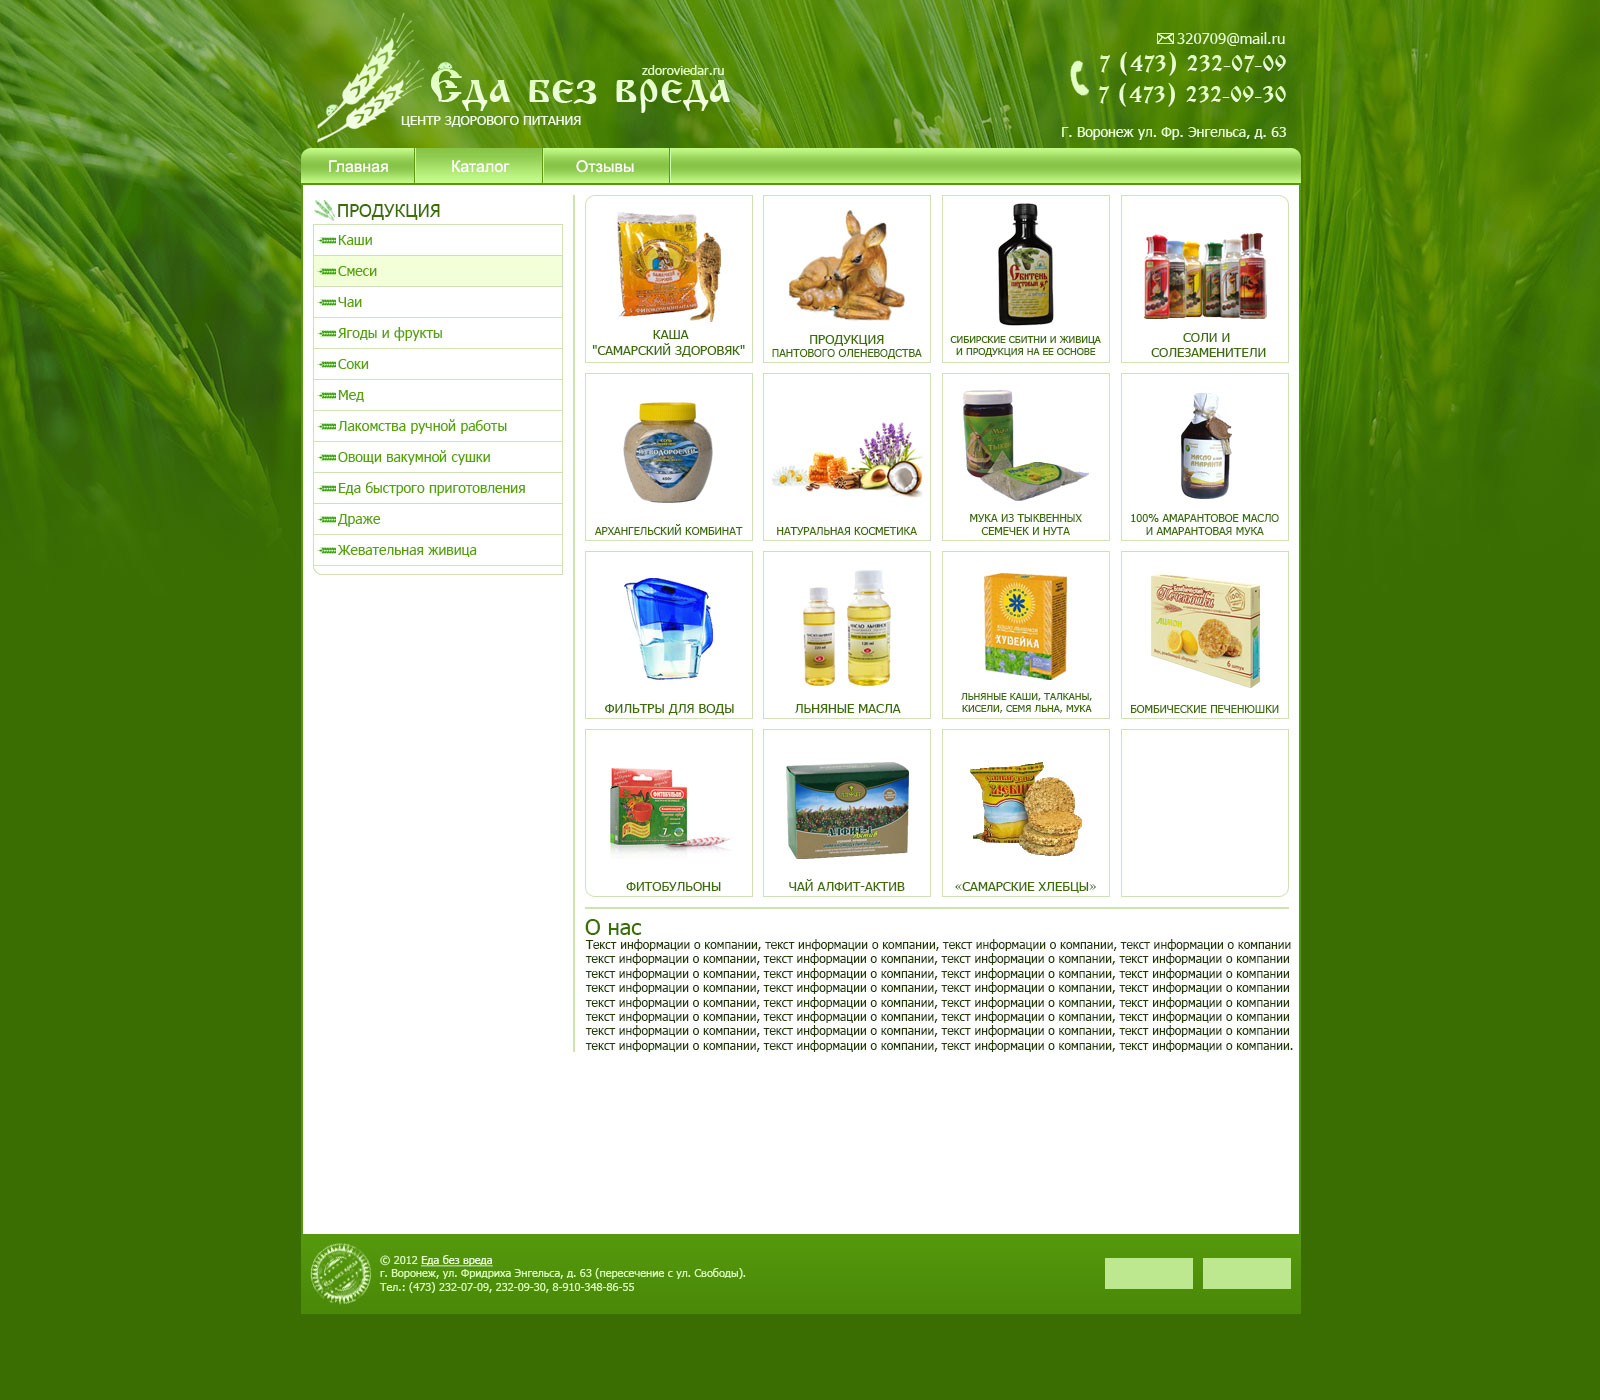 Верстка страниц сайта здорового питания ZdorovieDar Green